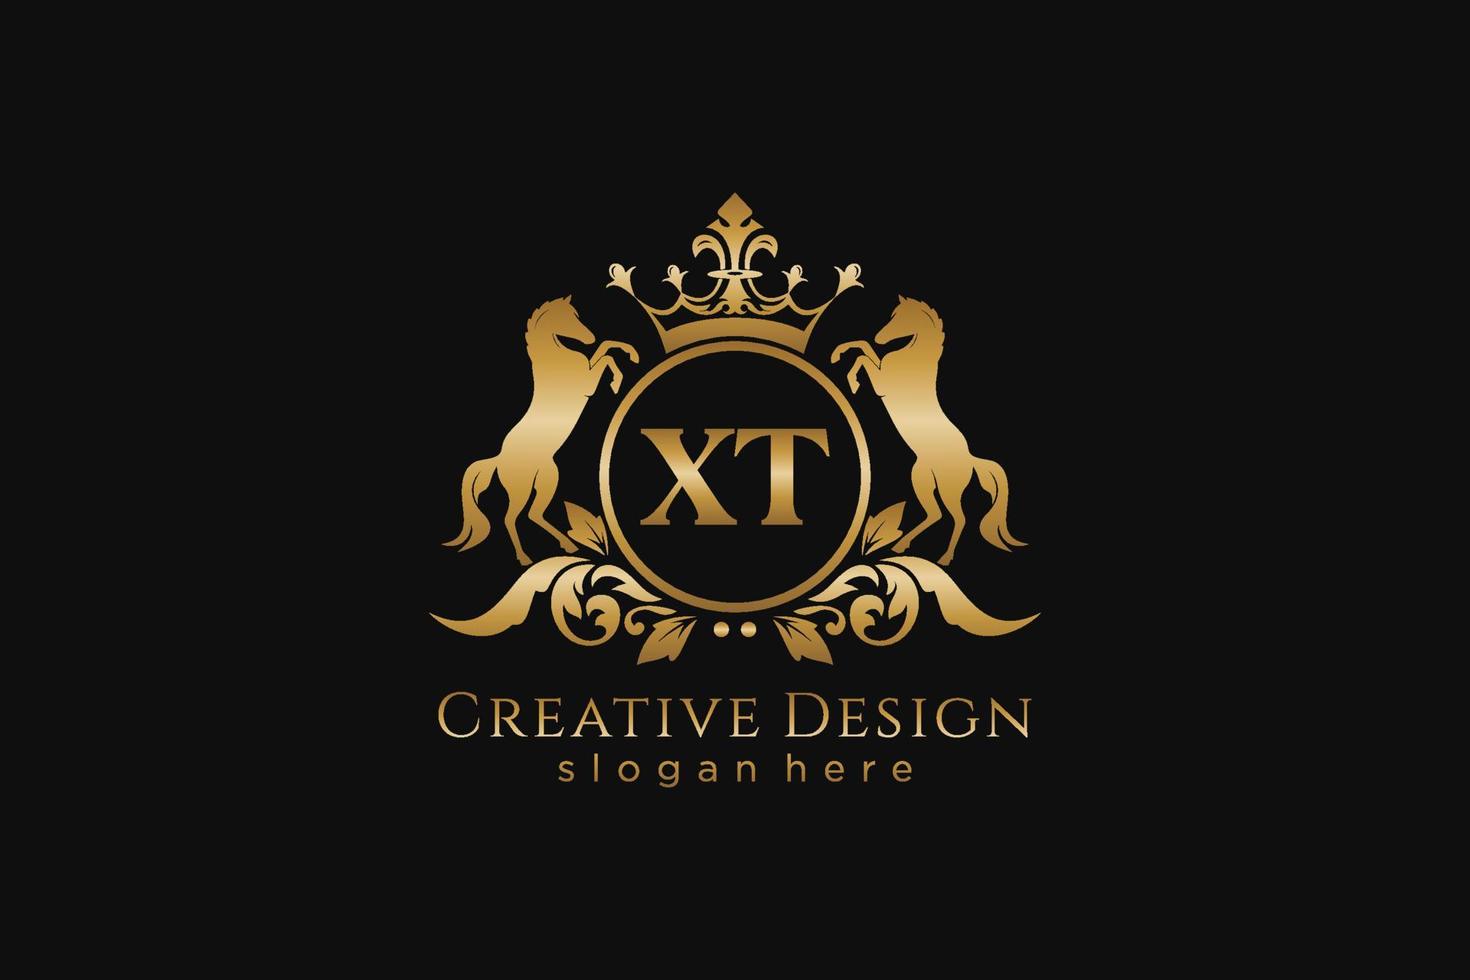 cresta dorada retro xt inicial con círculo y dos caballos, plantilla de insignia con pergaminos y corona real - perfecto para proyectos de marca de lujo vector